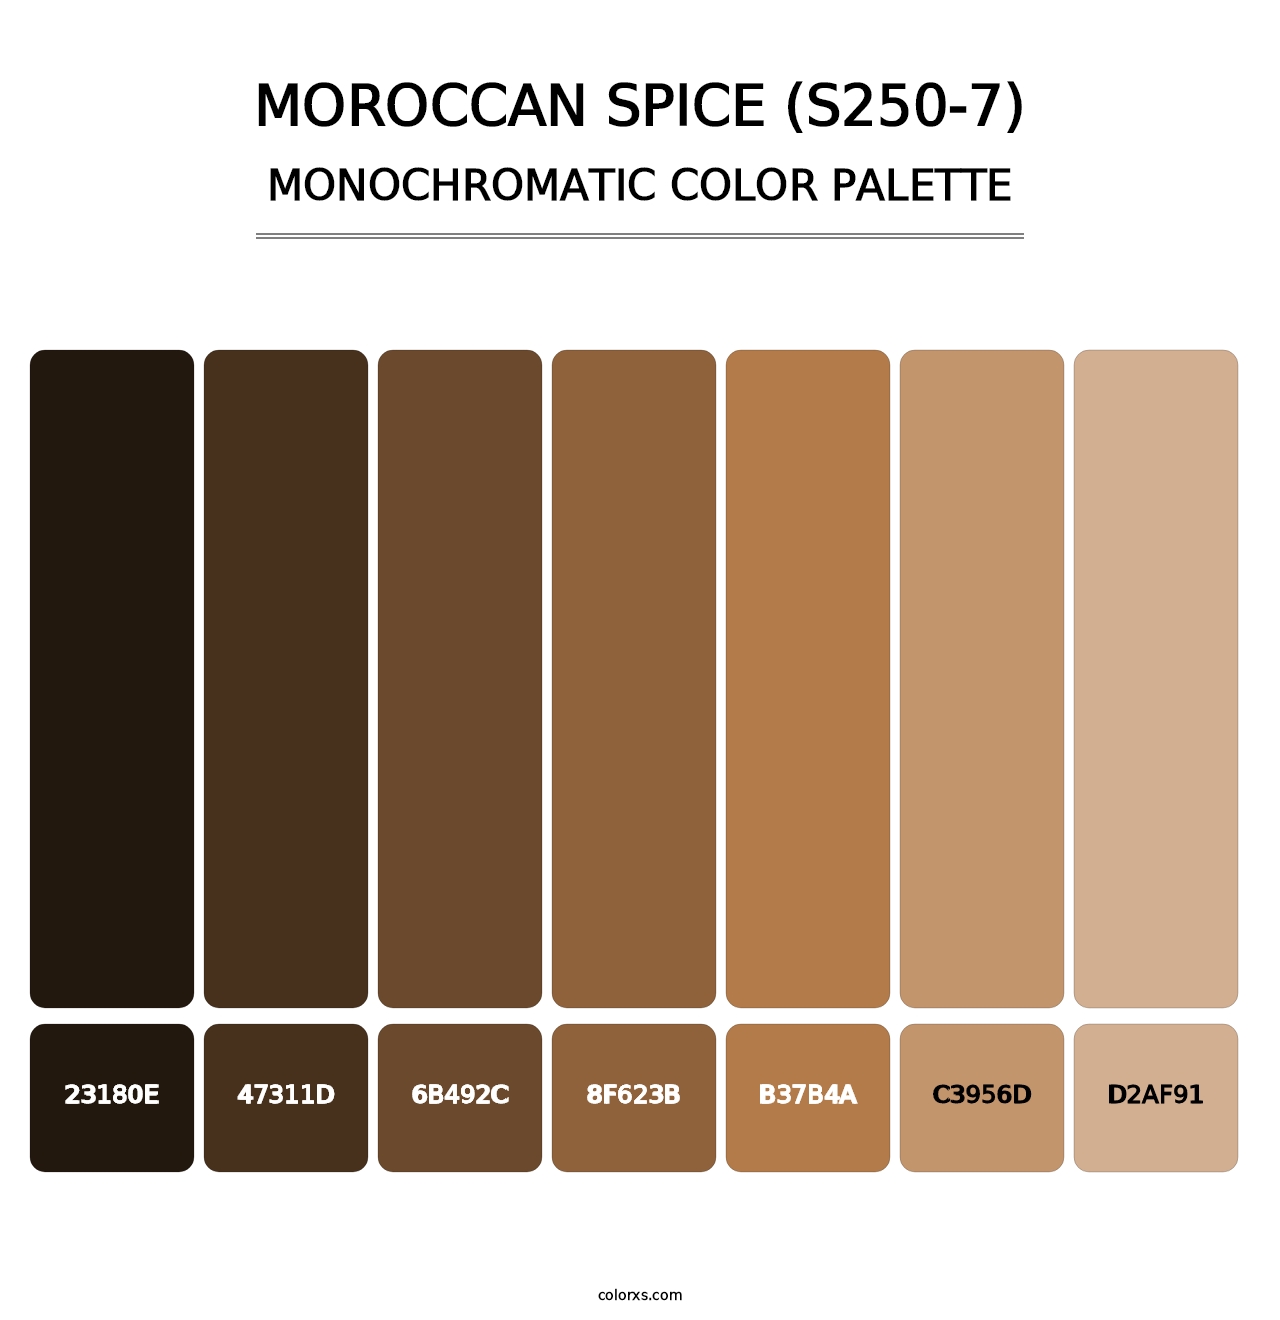 Moroccan Spice (S250-7) - Monochromatic Color Palette